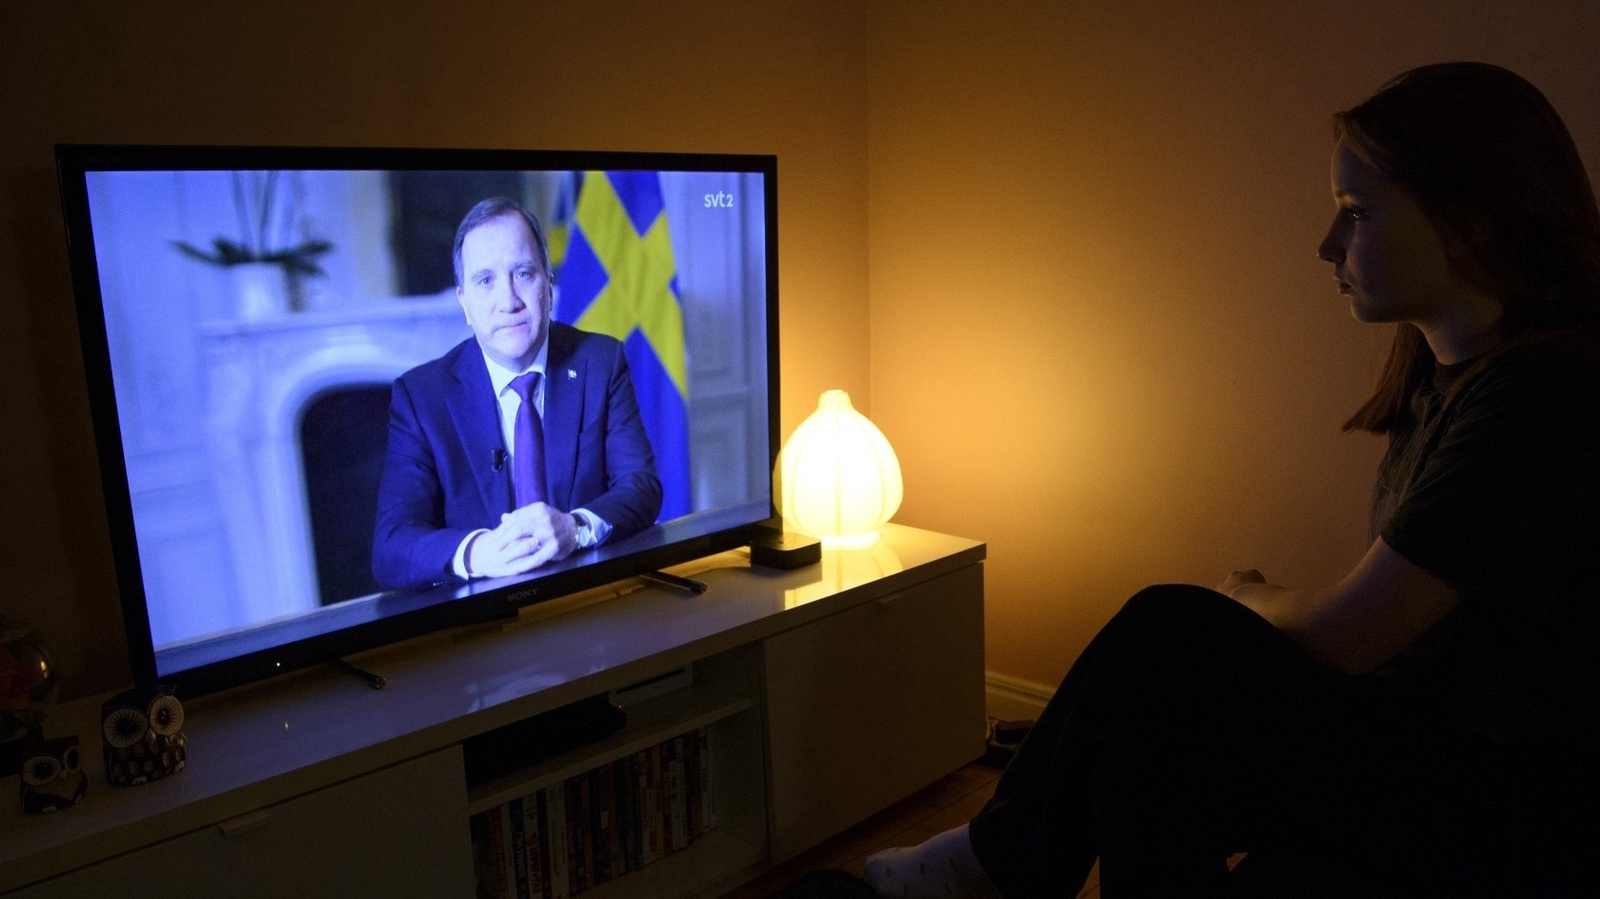 Statsminister Stefan Löfven (S) håller ett tal till nationen i SVT med anledning av coronapandemin.
Foto: Jessica Gow / TT